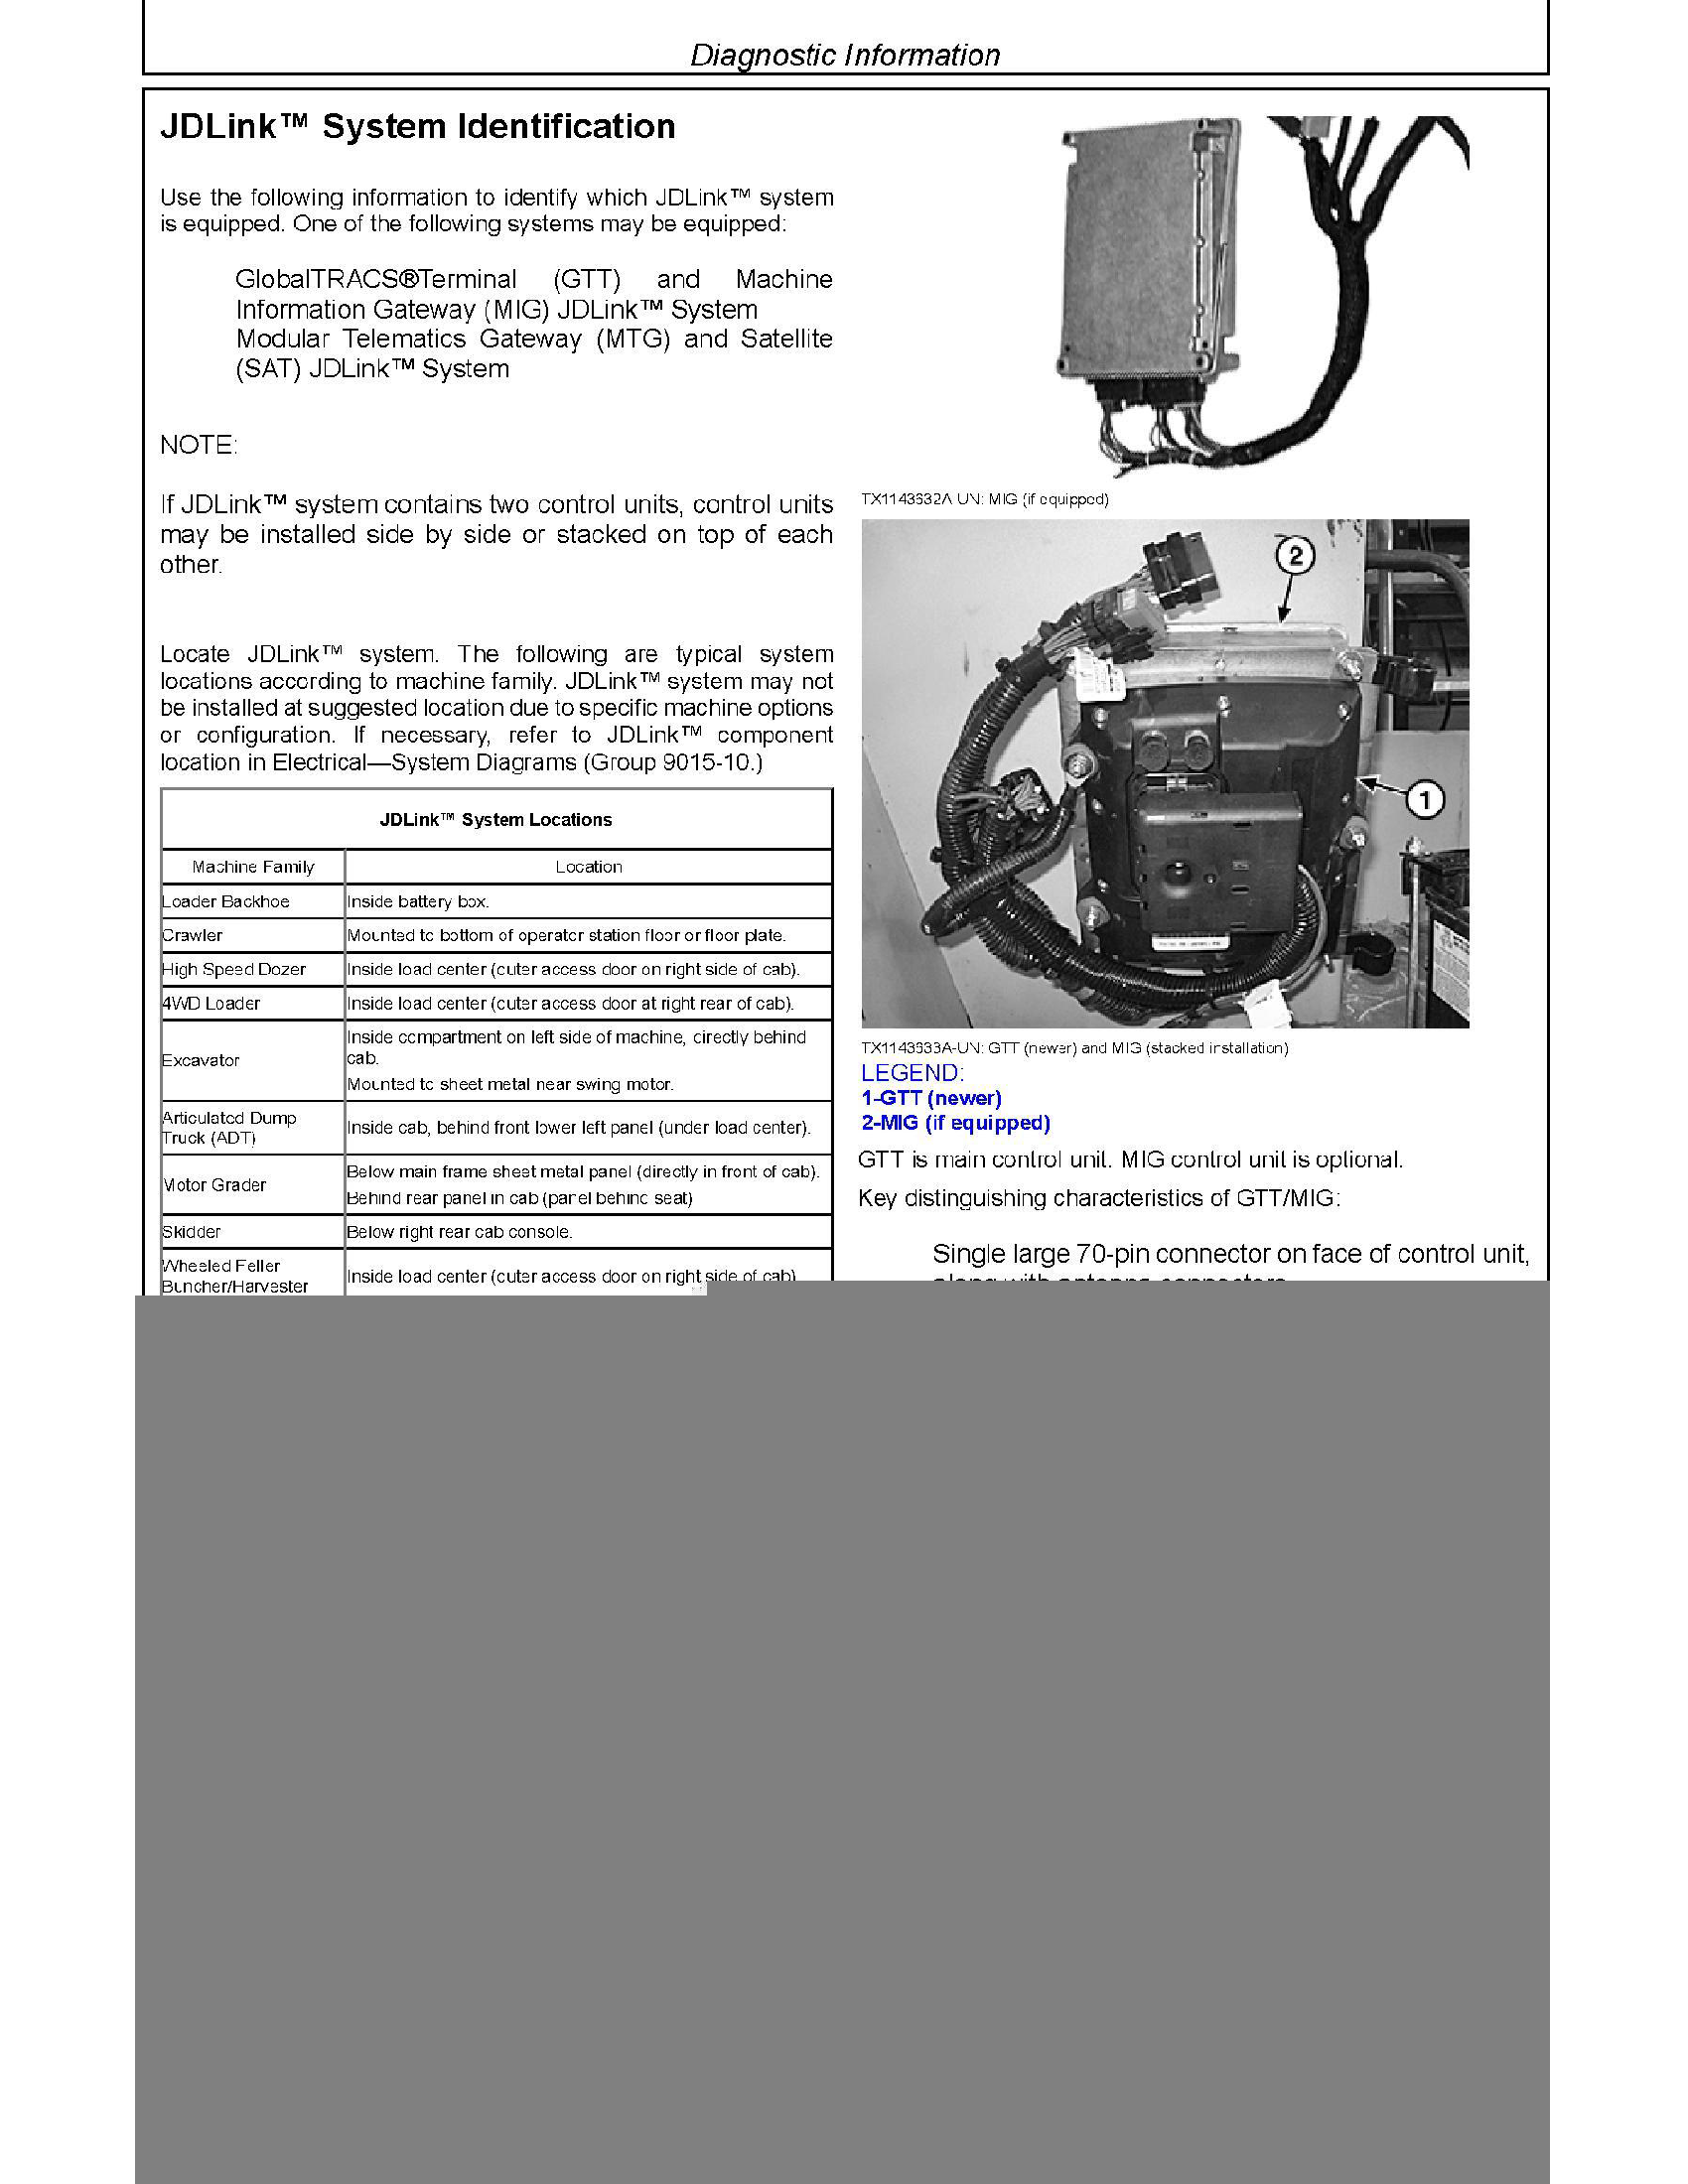 John Deere 2840 manual pdf